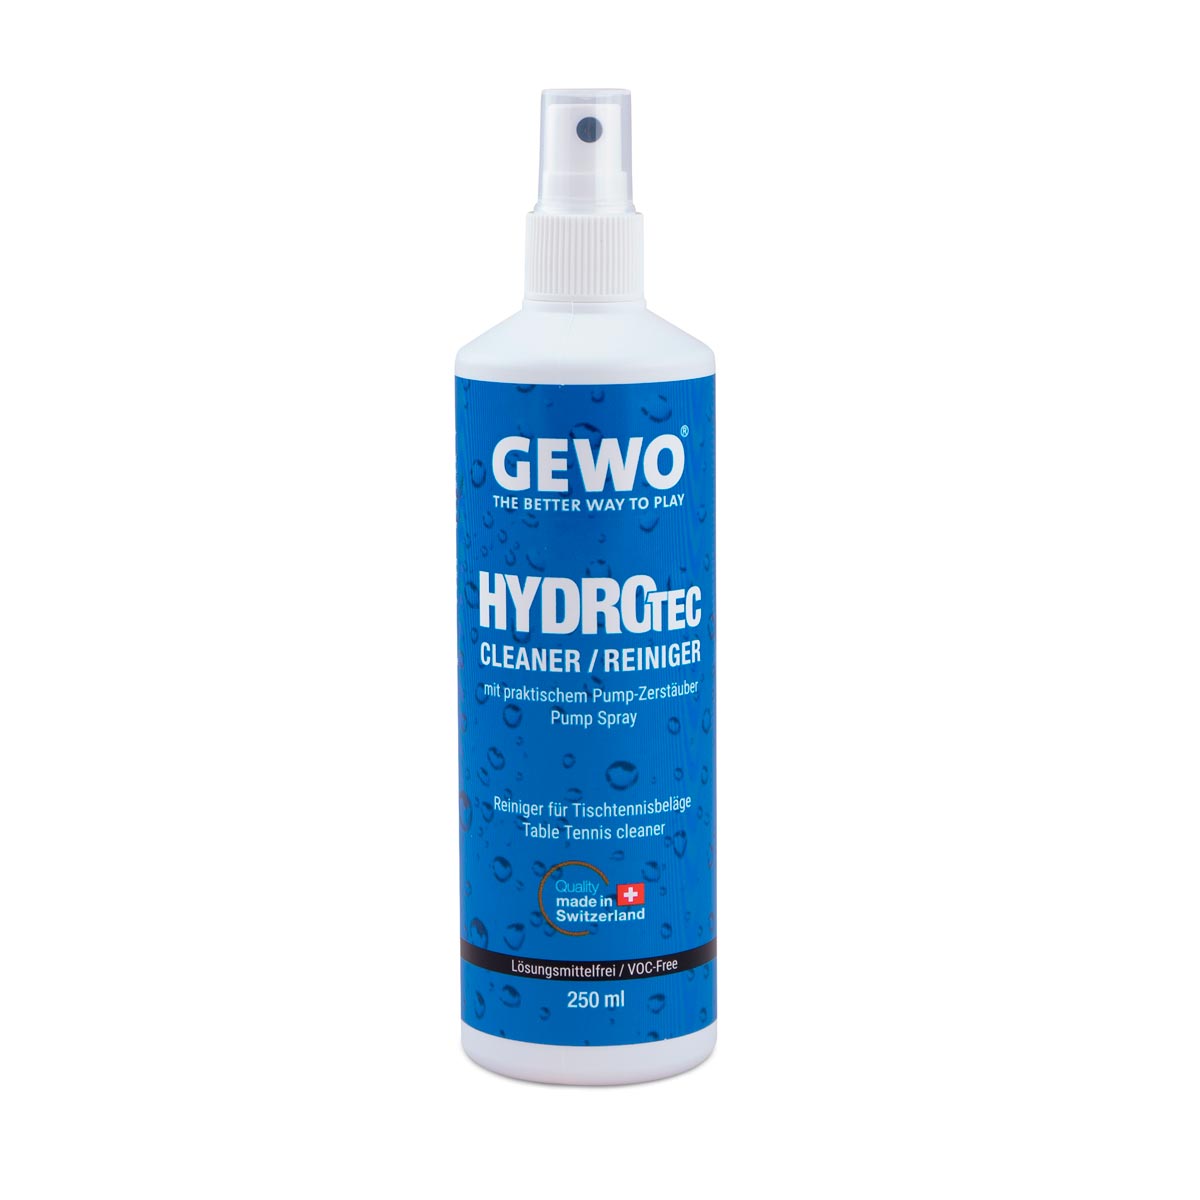 GEWO HydroTec Cleaner 250ml Pumpspray